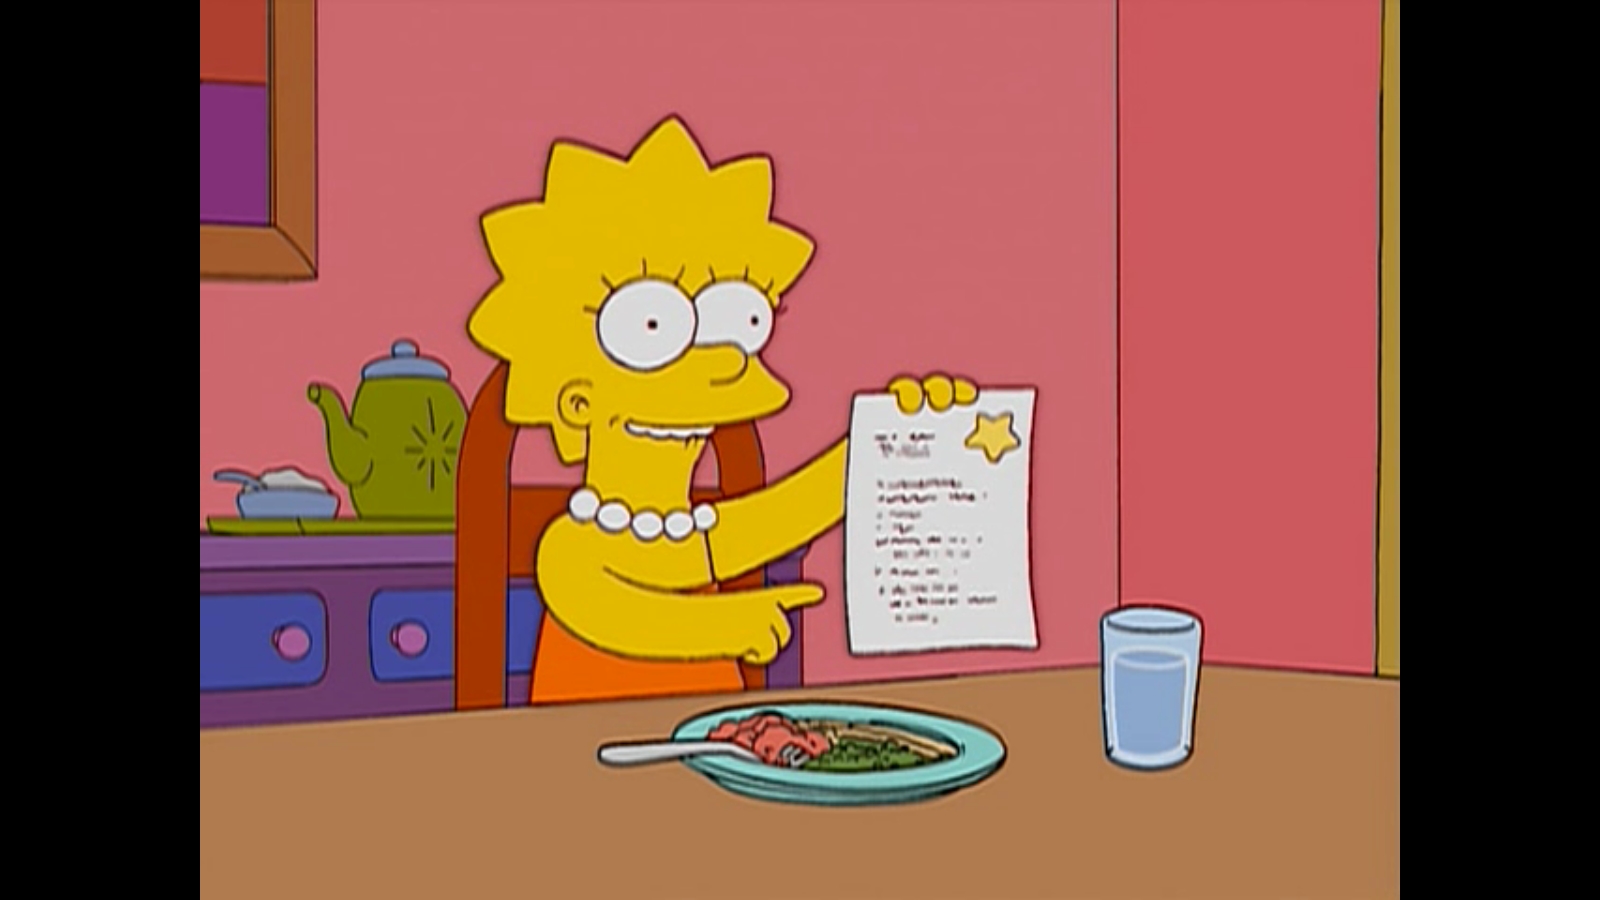 Les Simpsons / S14E15 / 0:16:40.